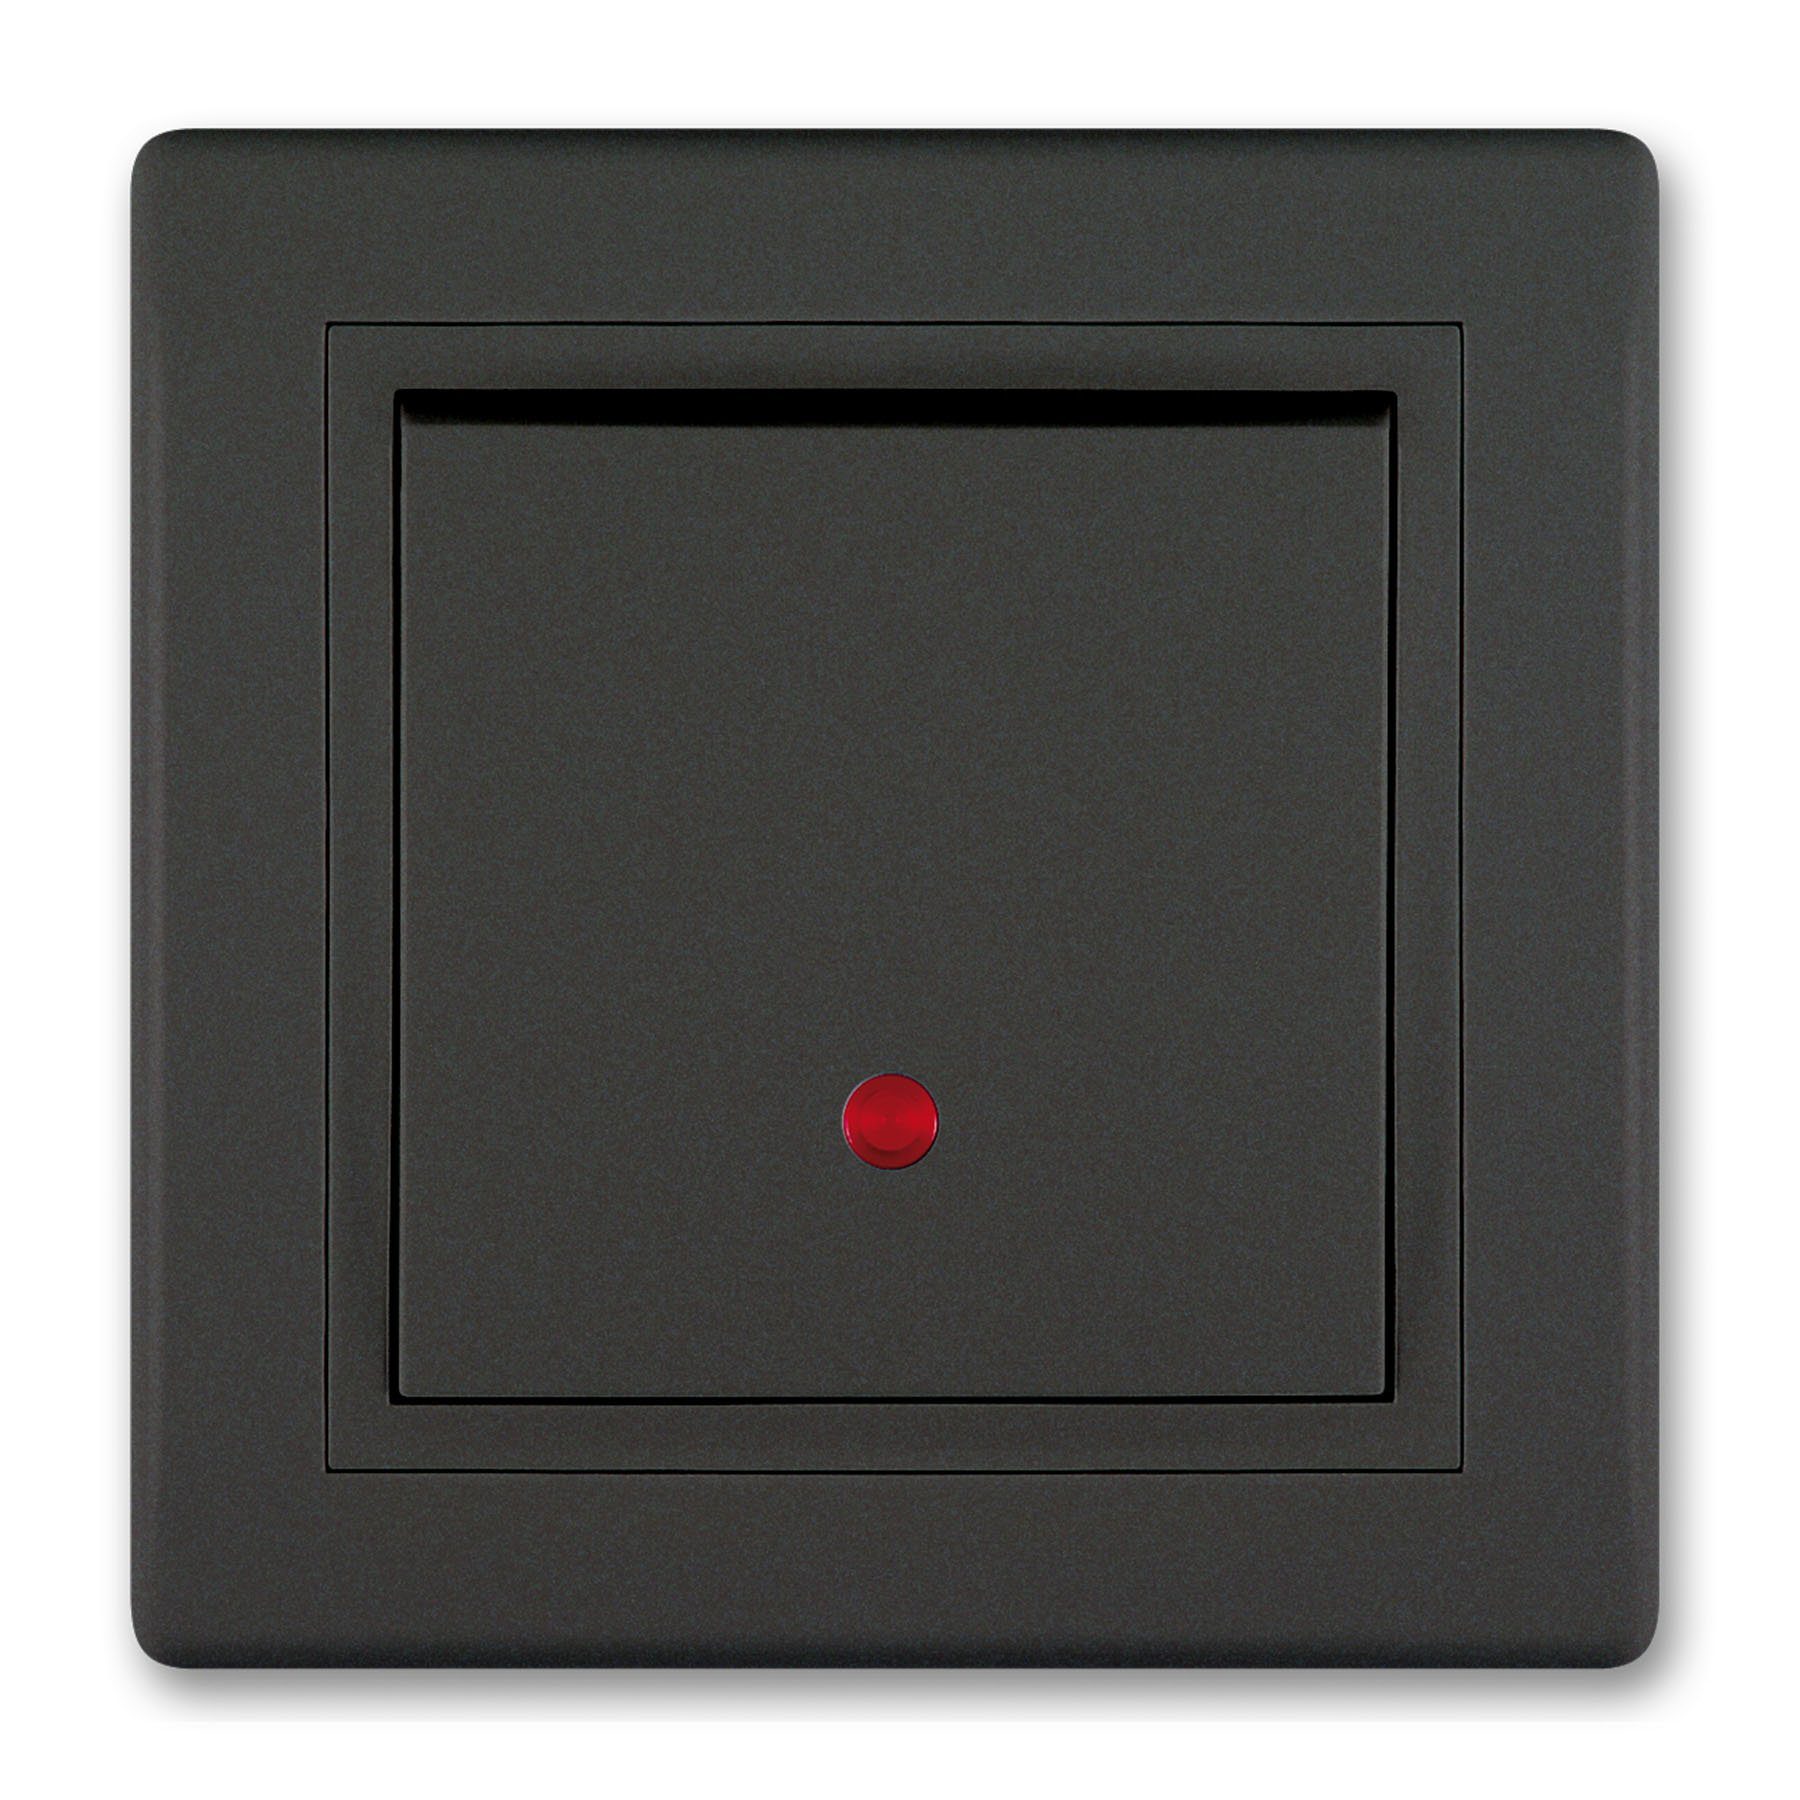 (Packung), Glimmlampe Lichtschalter Aling Touch VDE-zertifiziert Conel Schwarz Schalter mit Soft Line Prestige